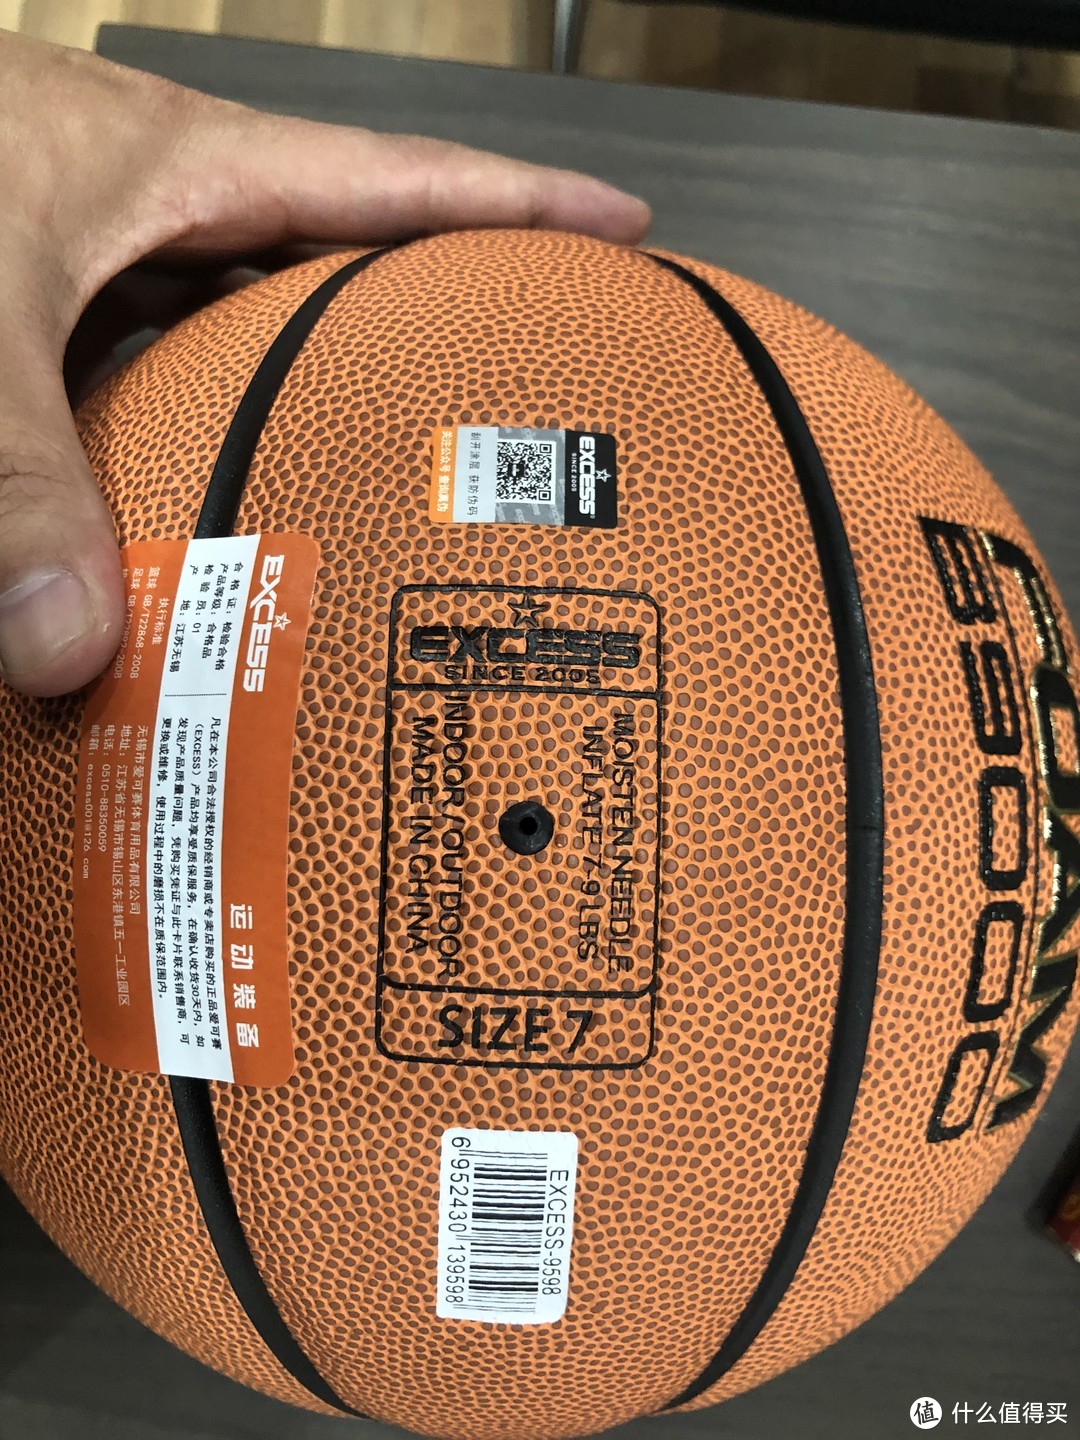 都说它是百元以内天花板的存在的超纤篮球-爱克赛9598